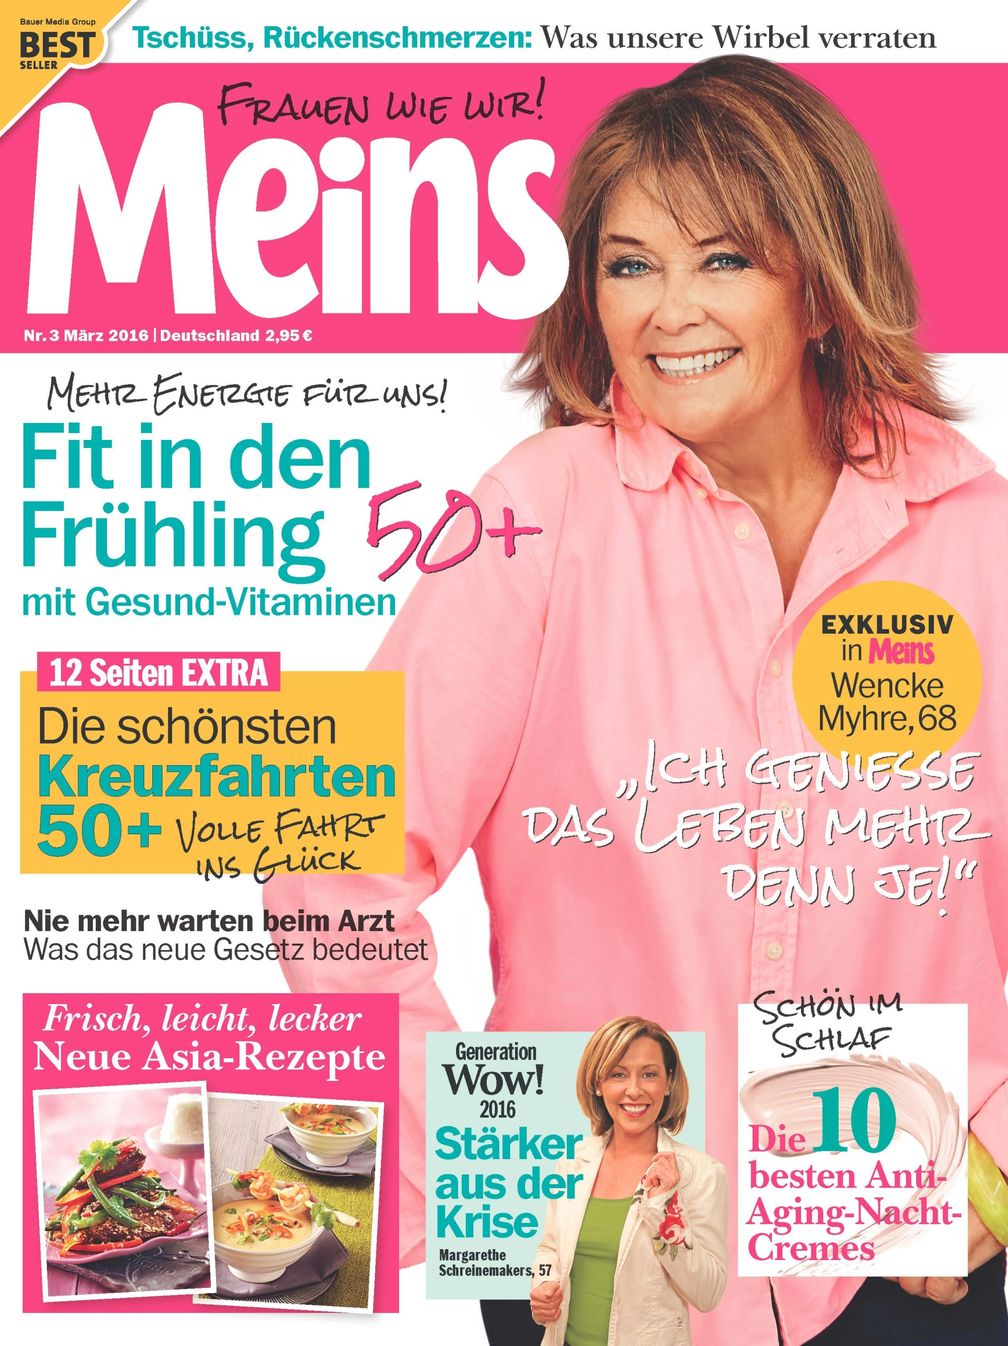 Bild: "obs/Bauer Media Group, Meins"